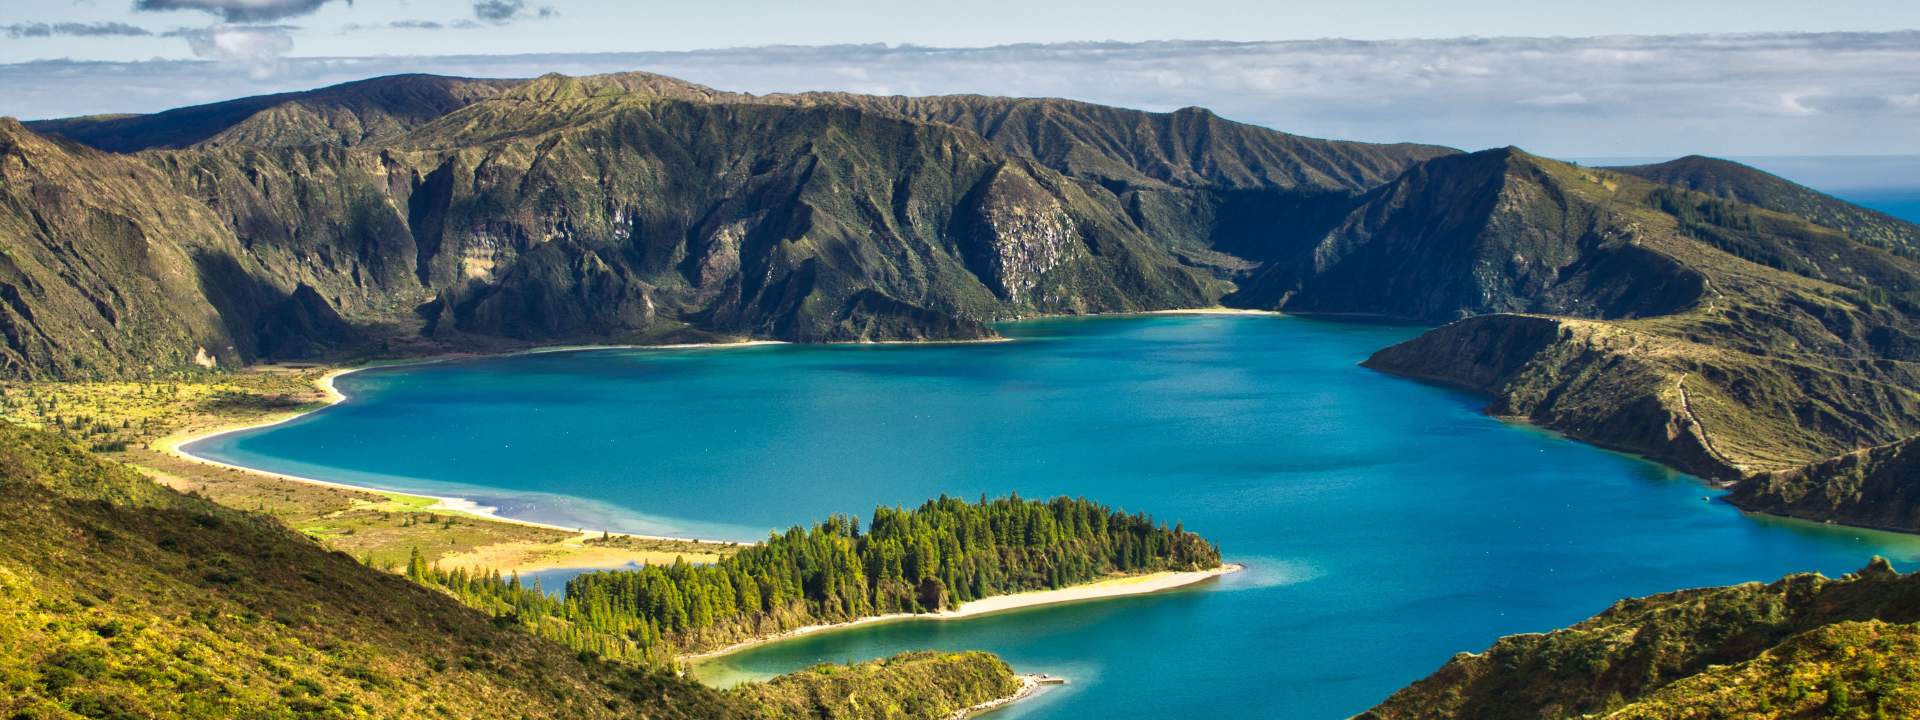 Discover the magical Azores Archipelago